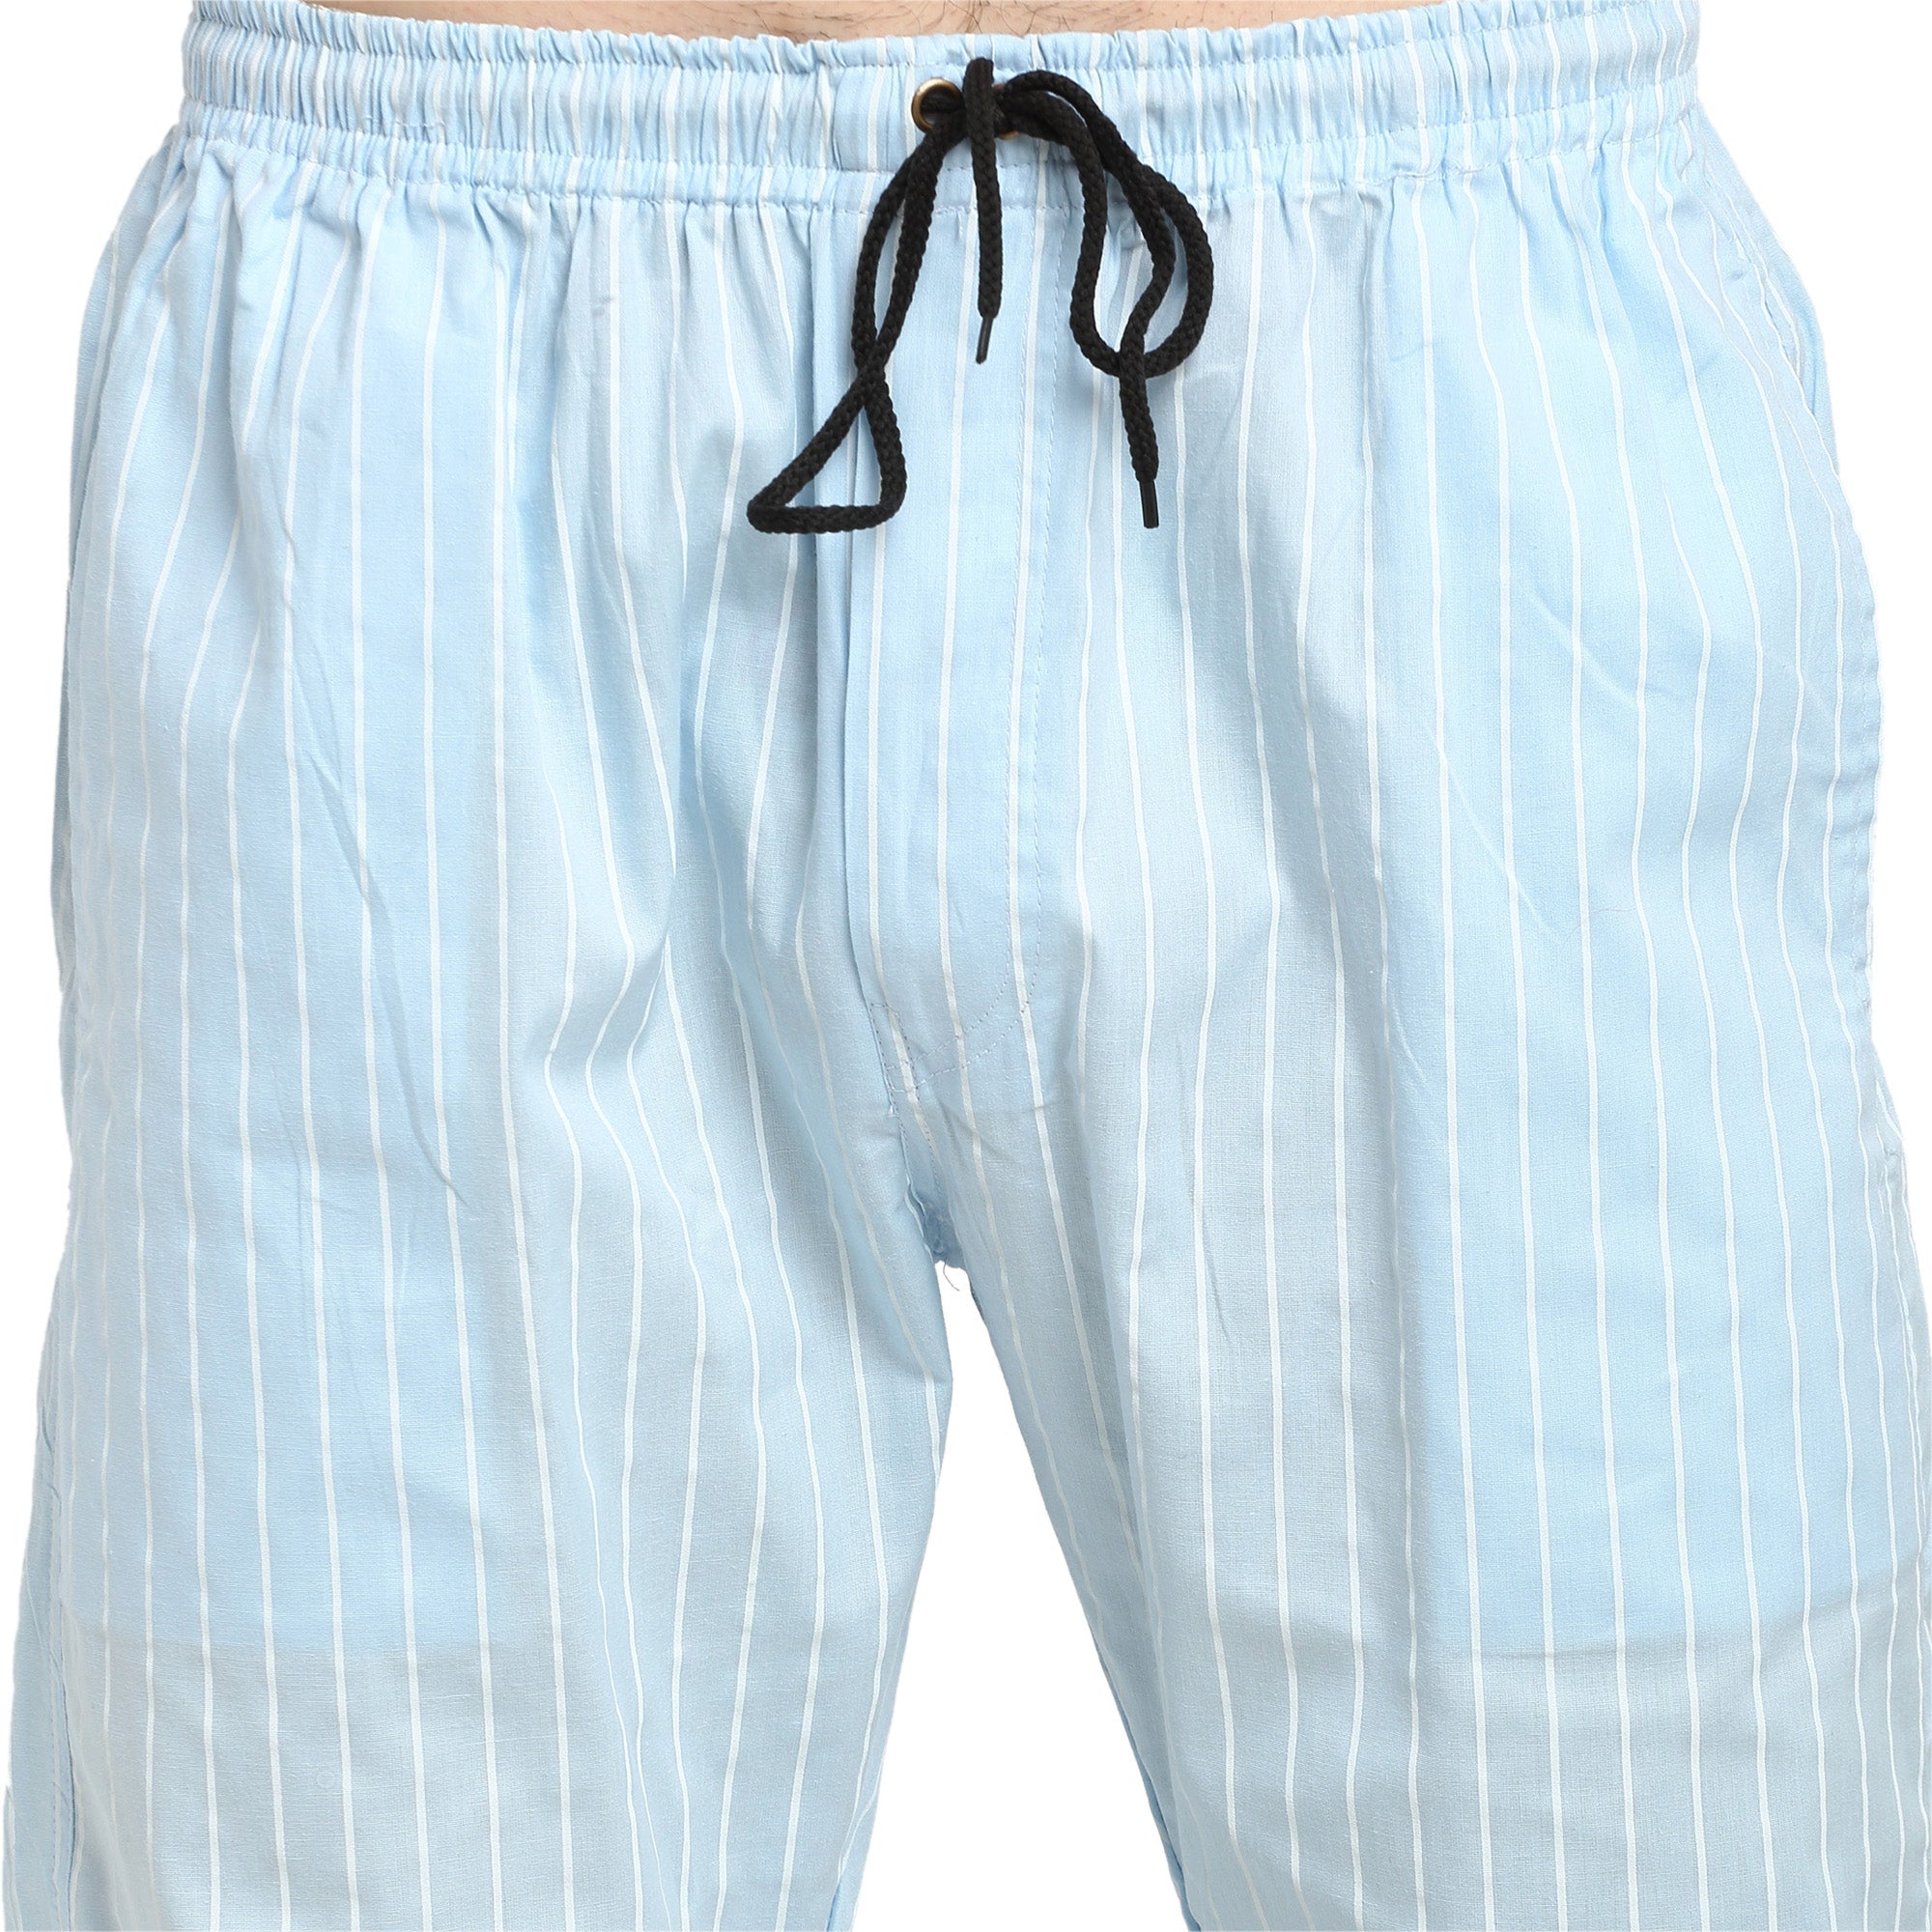 Men's Blue Cotton Striped Track Pants ( JOG 020Sky ) - Jainish